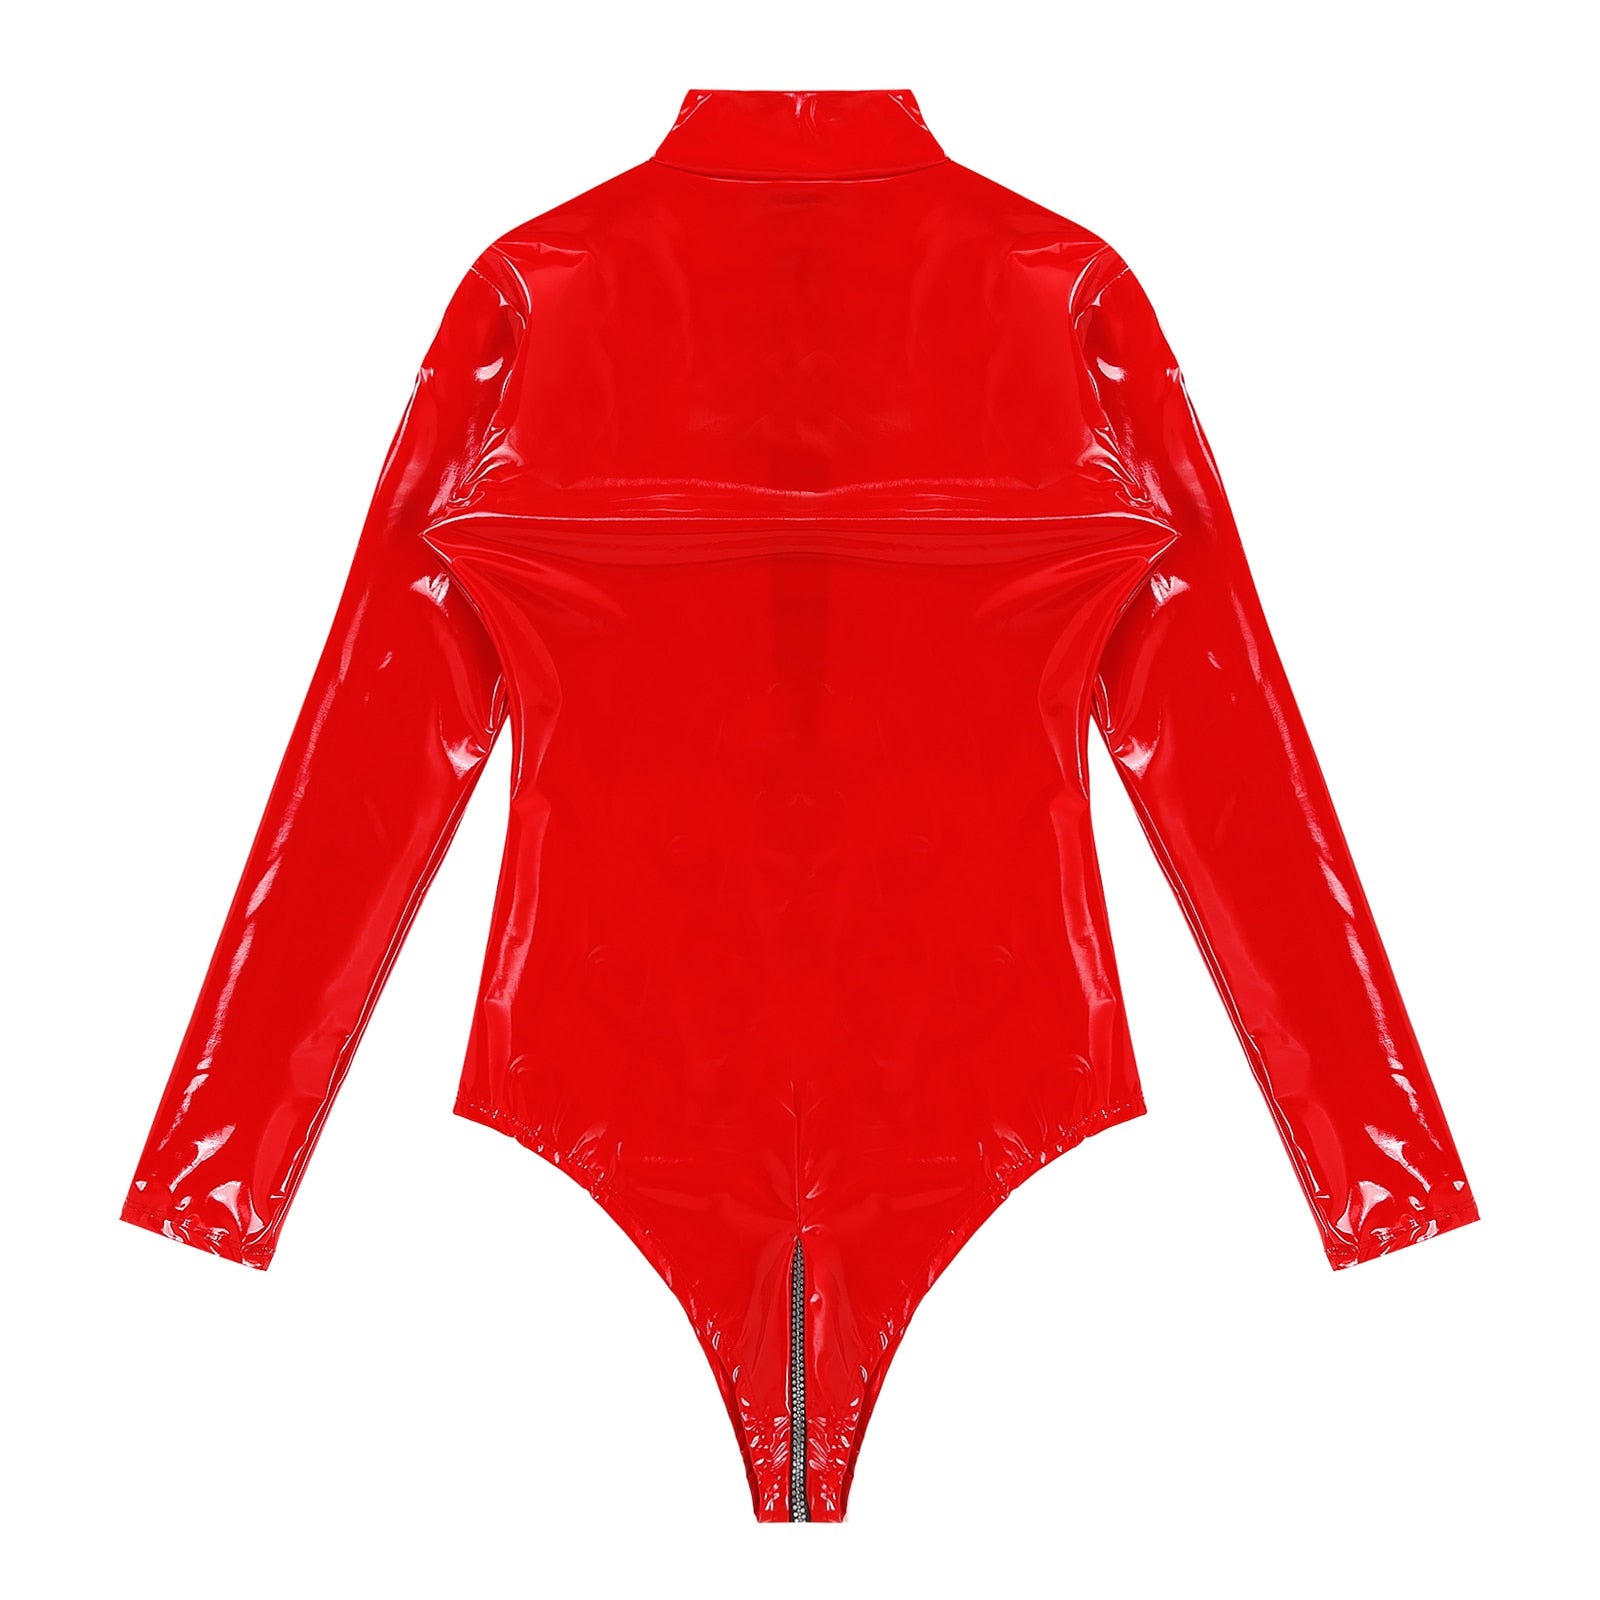 Damen Wet-Look PVC Latex Catsuit - Langärmeliger Clubwear Bodysuit mit Reißverschluss und High-Cut Design für Pole-Dance - undergroundtechnostore.de